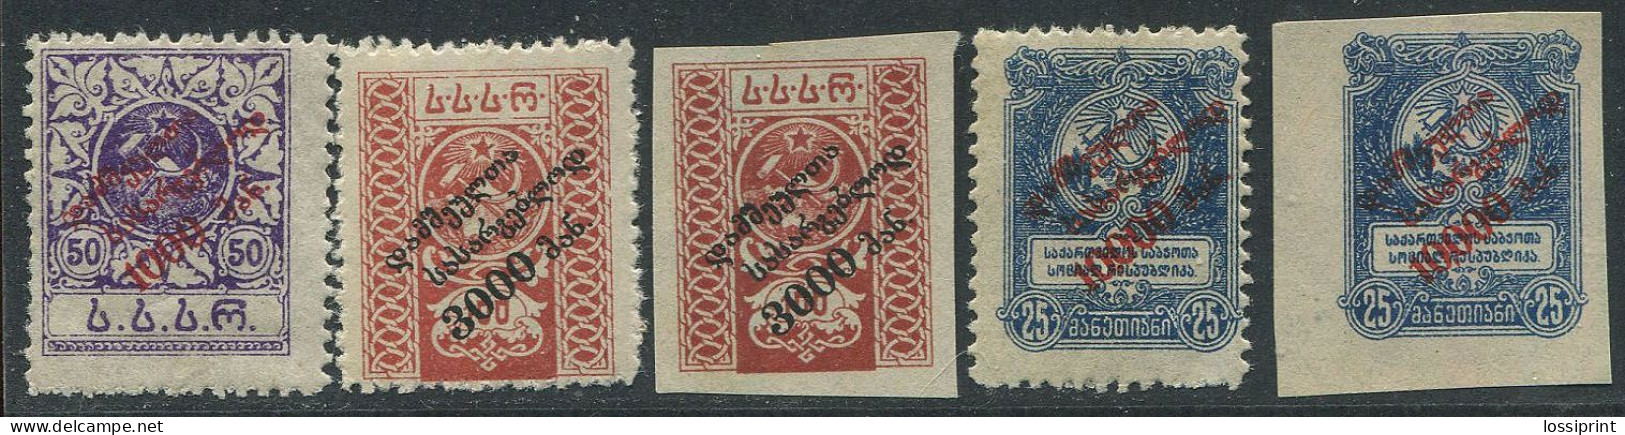 Georgia:Russia:Unused Overprinted Stamps, 1922, MNH - Georgië